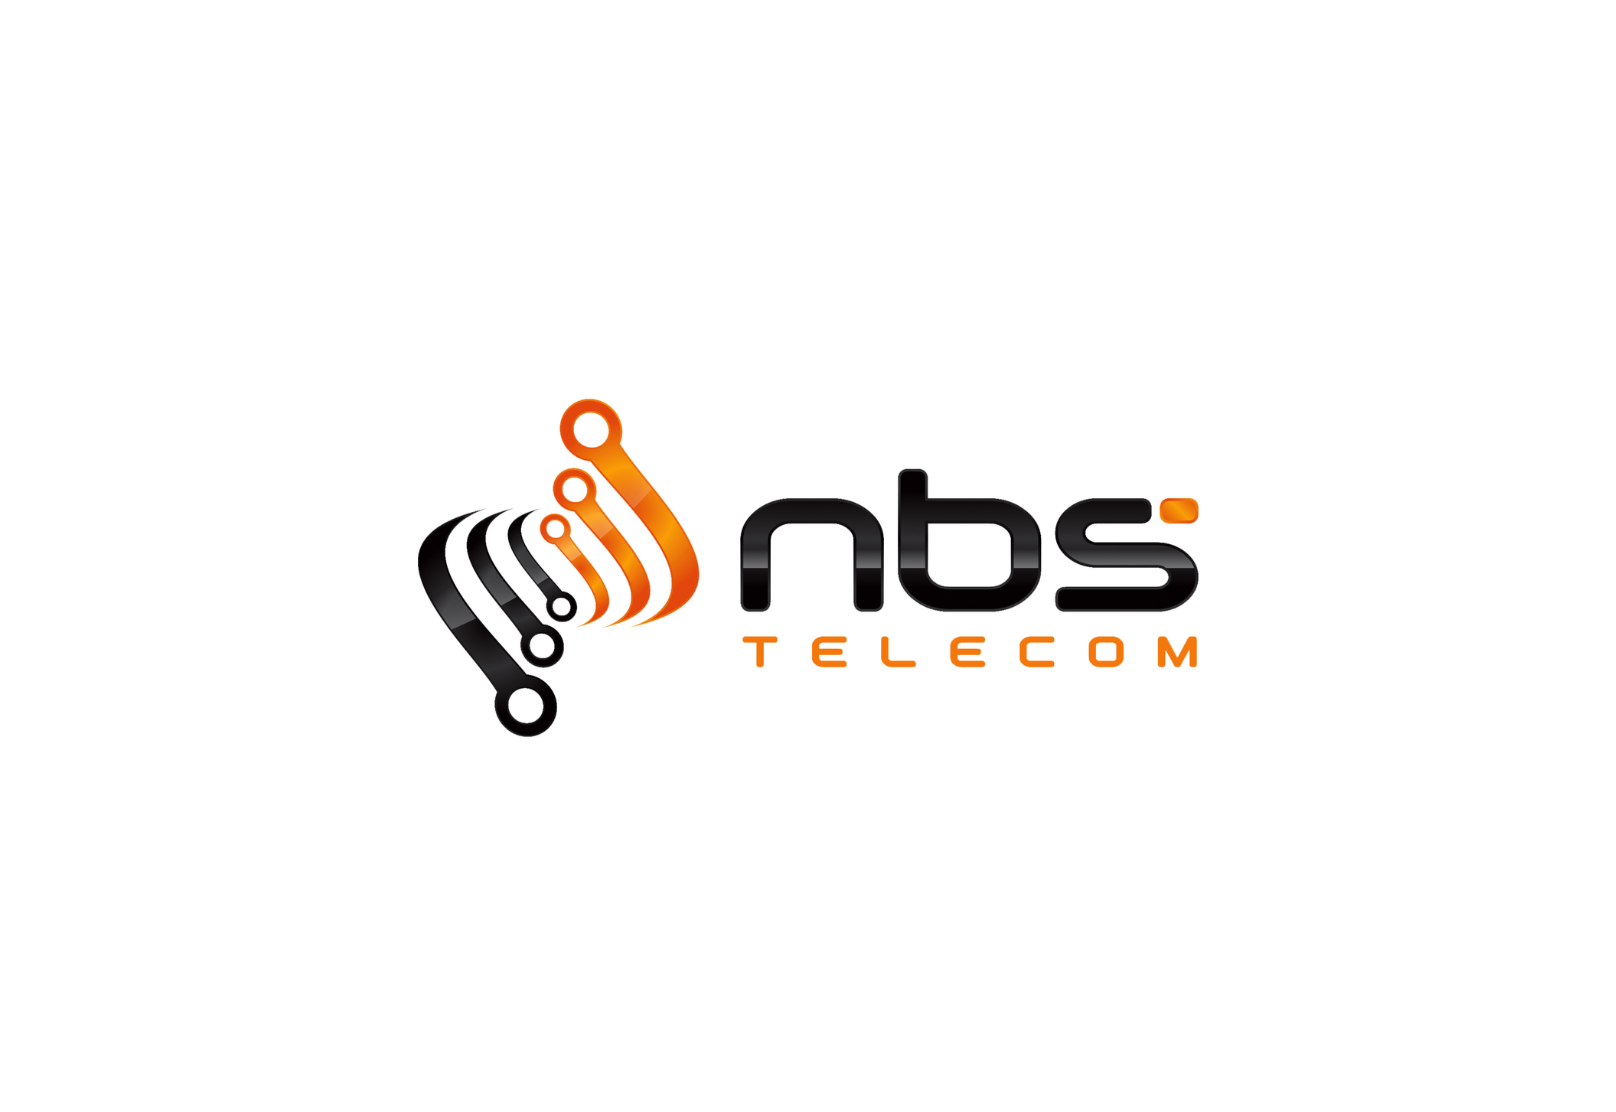 Provedora NBS Telecom, de Rondônia, escolhe solução DWDM da Padtec para ampliar presença em outras regiões do Brasil